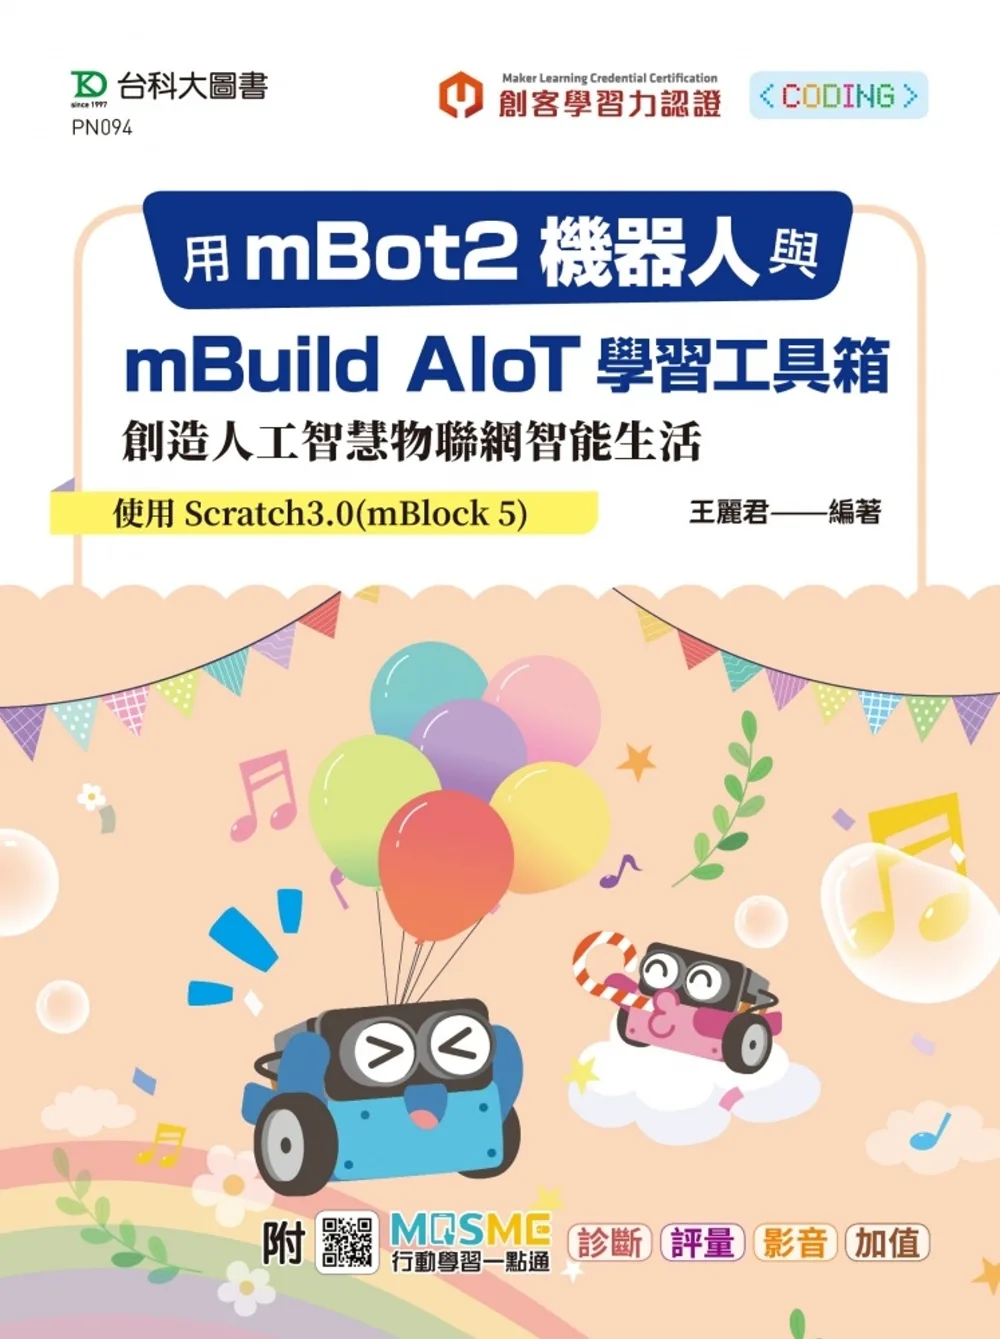 用mBot2機器人與mBuild